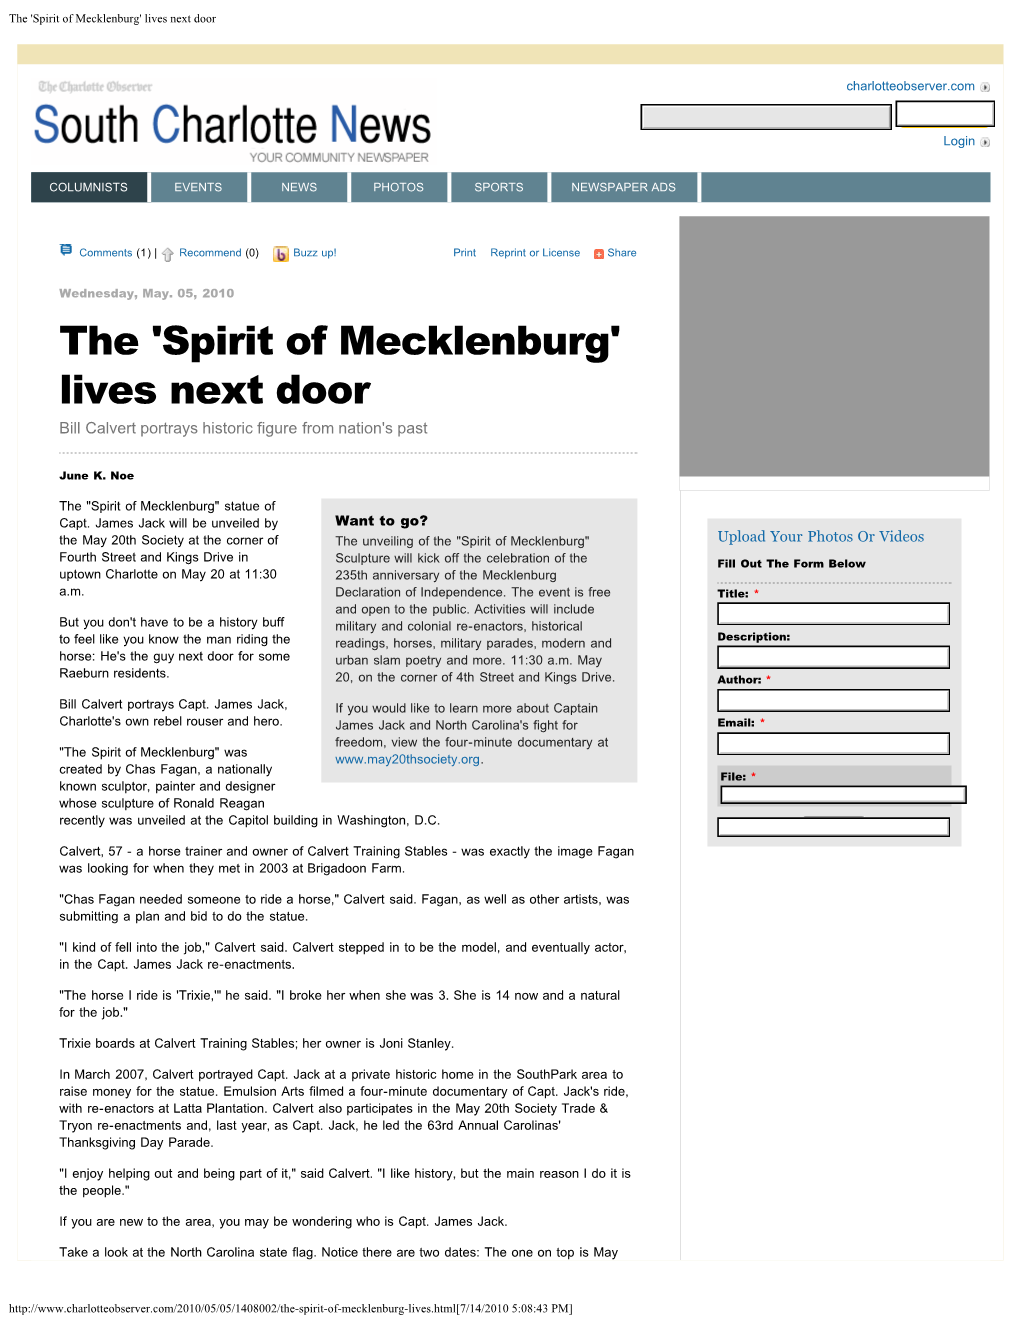 Spirit of Mecklenburg' Lives Next Door